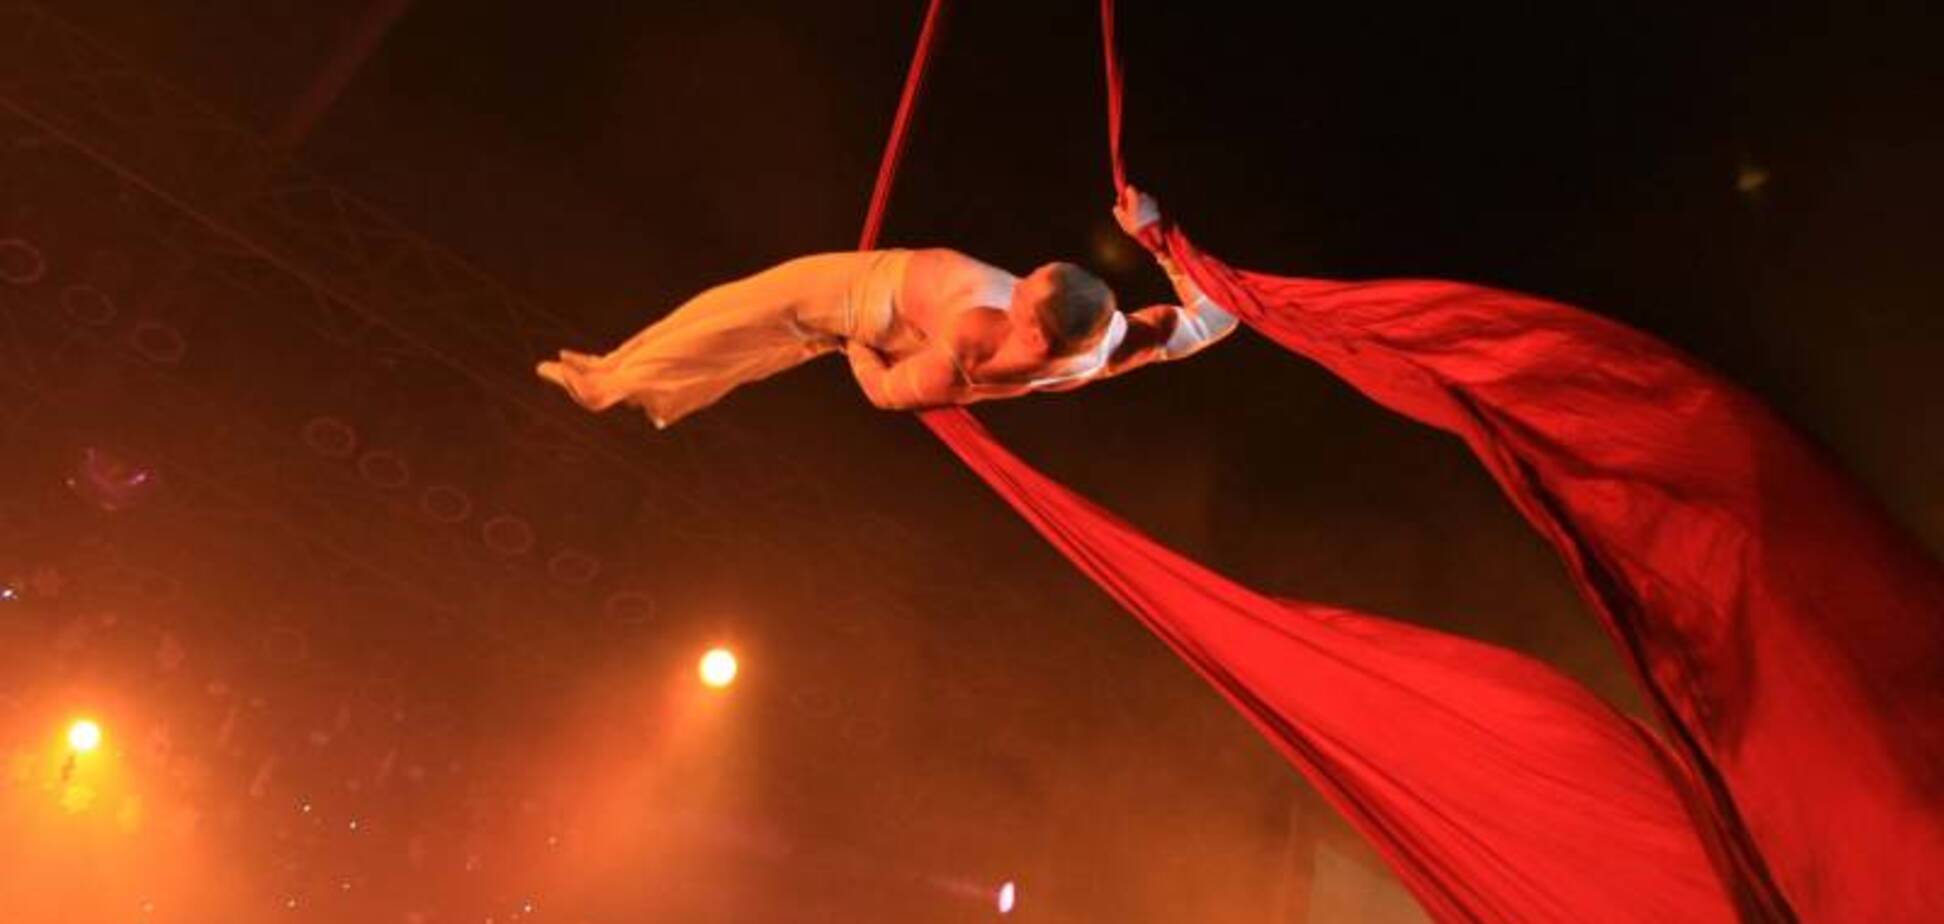 Жуткое падение акробата из под купола цирка в России попало на видео